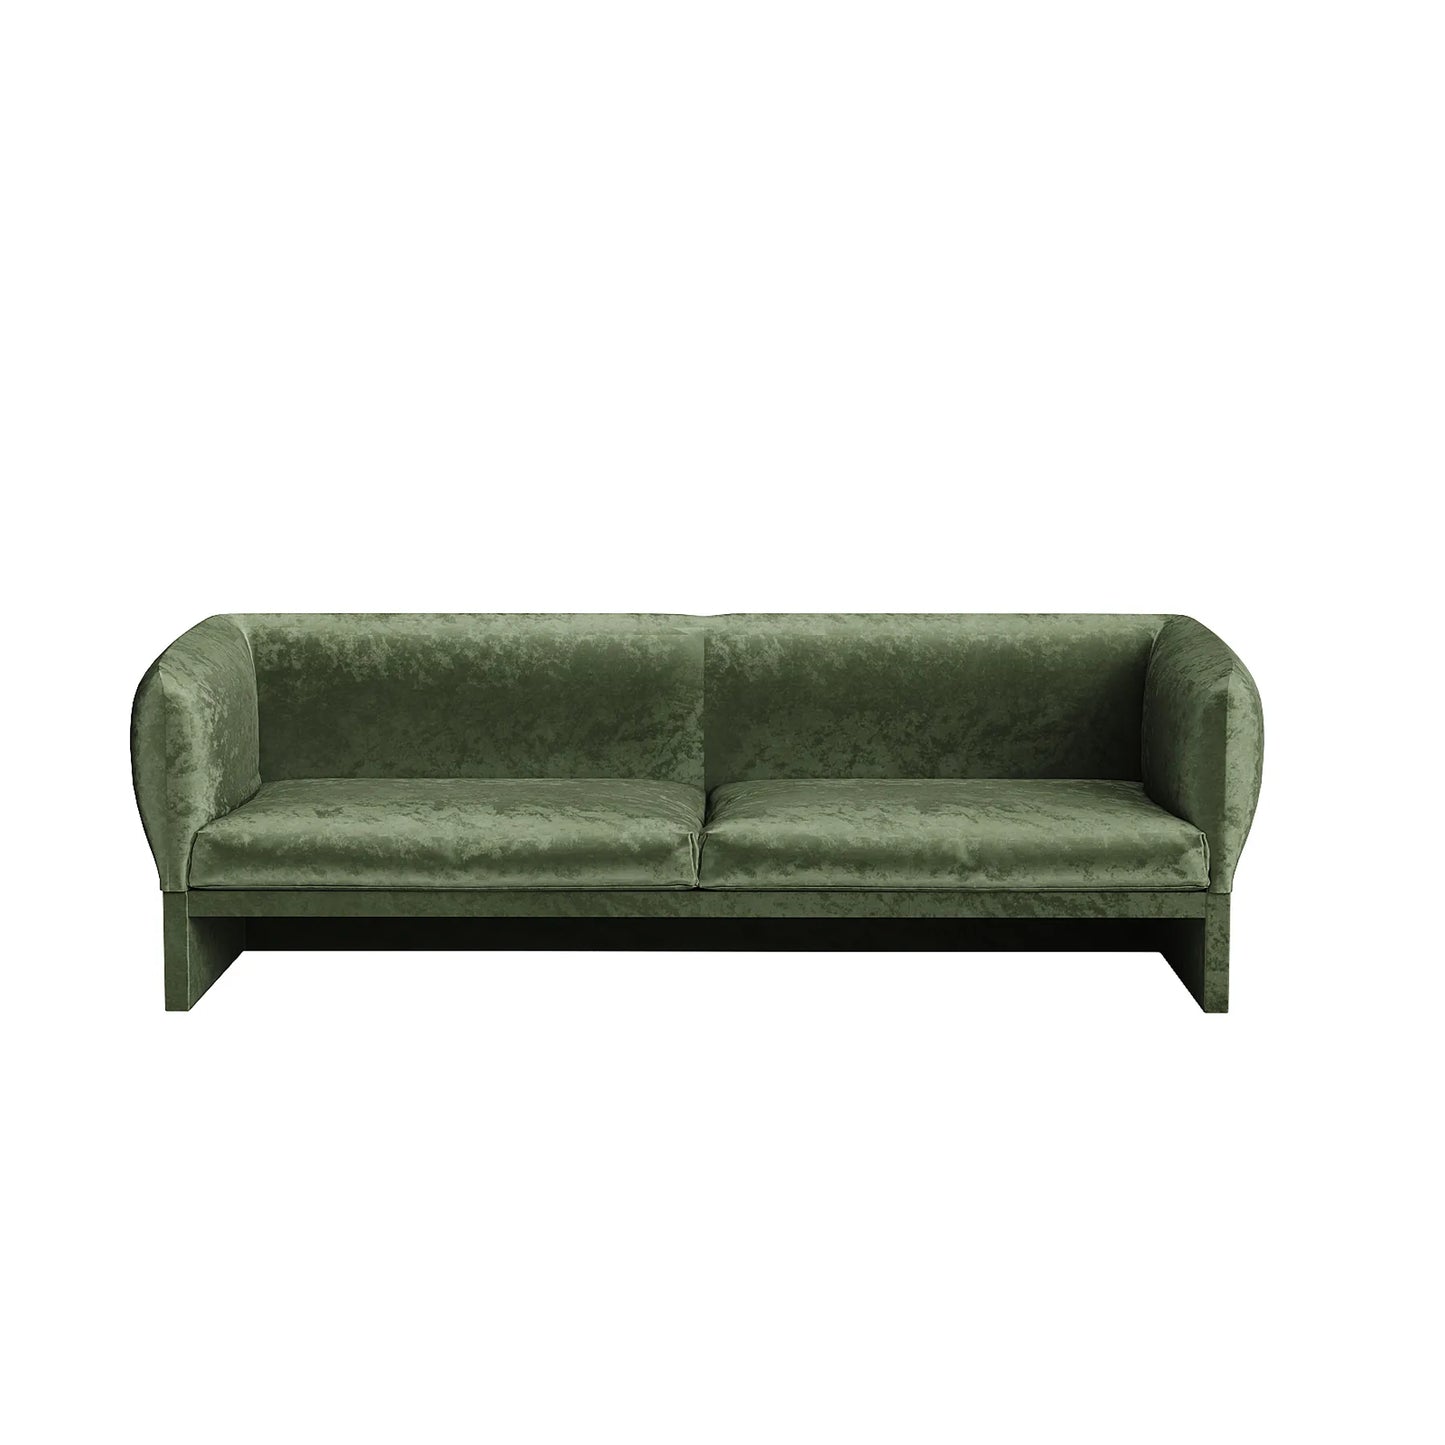 Tulip 3 Seater Sofa - Decent Jungle